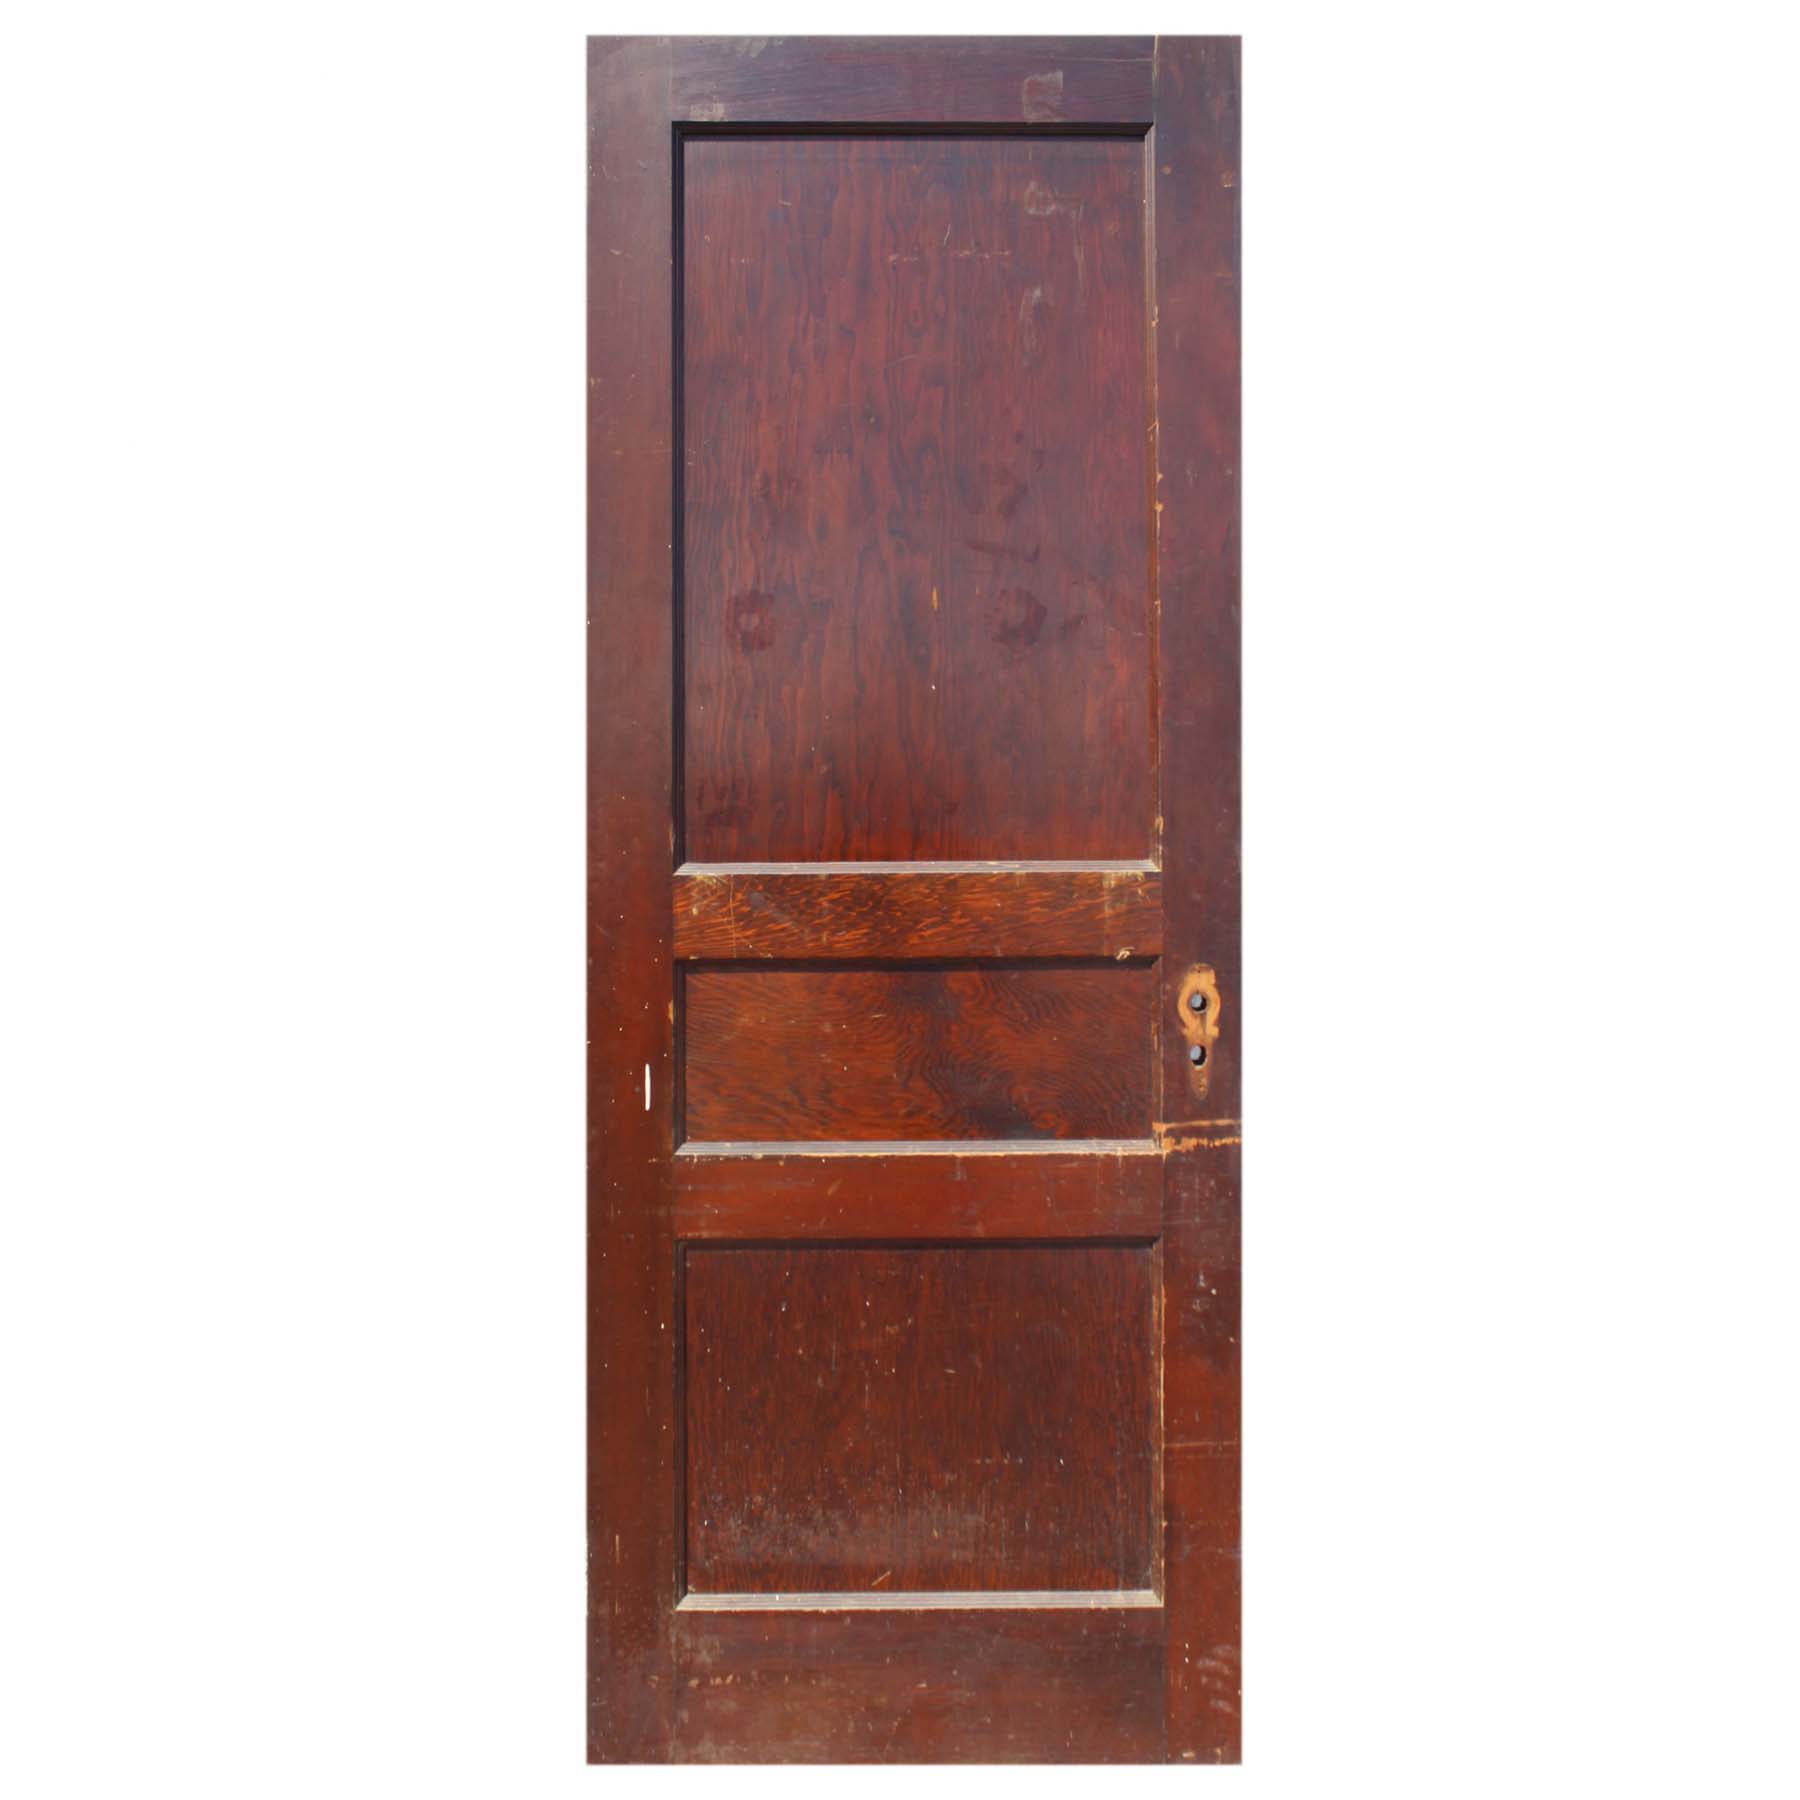 SOLD Antique 30” Three-Panel Solid Wood Door-0